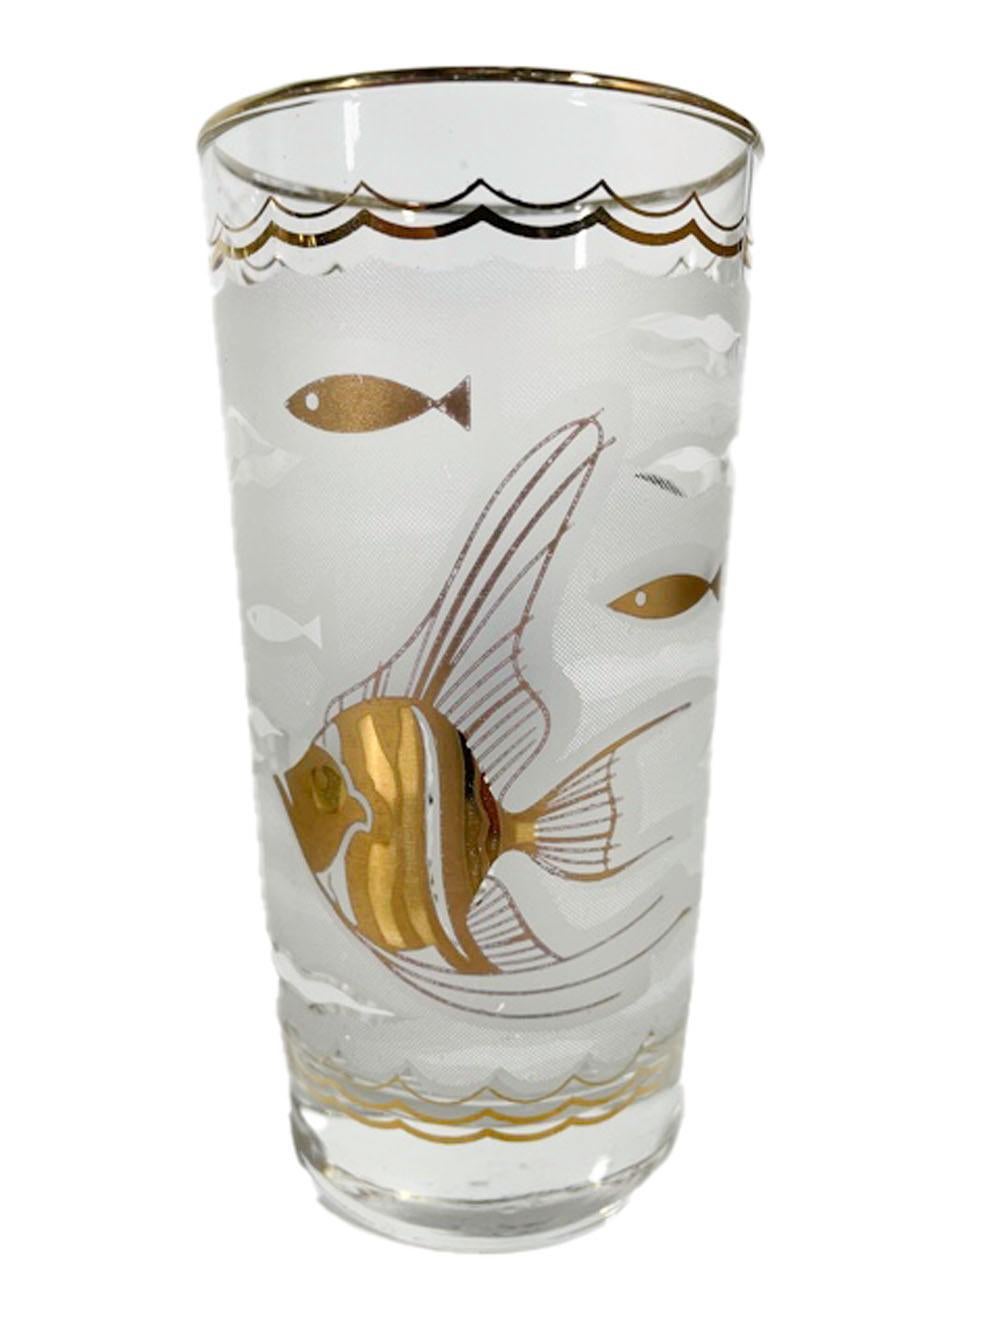 Huit verres highball de Libbey Glass, de style moderne du milieu du siècle, présentant un fond givré à motifs aquatiques avec de grands poissons anges et de petits poissons stylisés en or 22k sur le devant et le dos, les côtés étant décorés